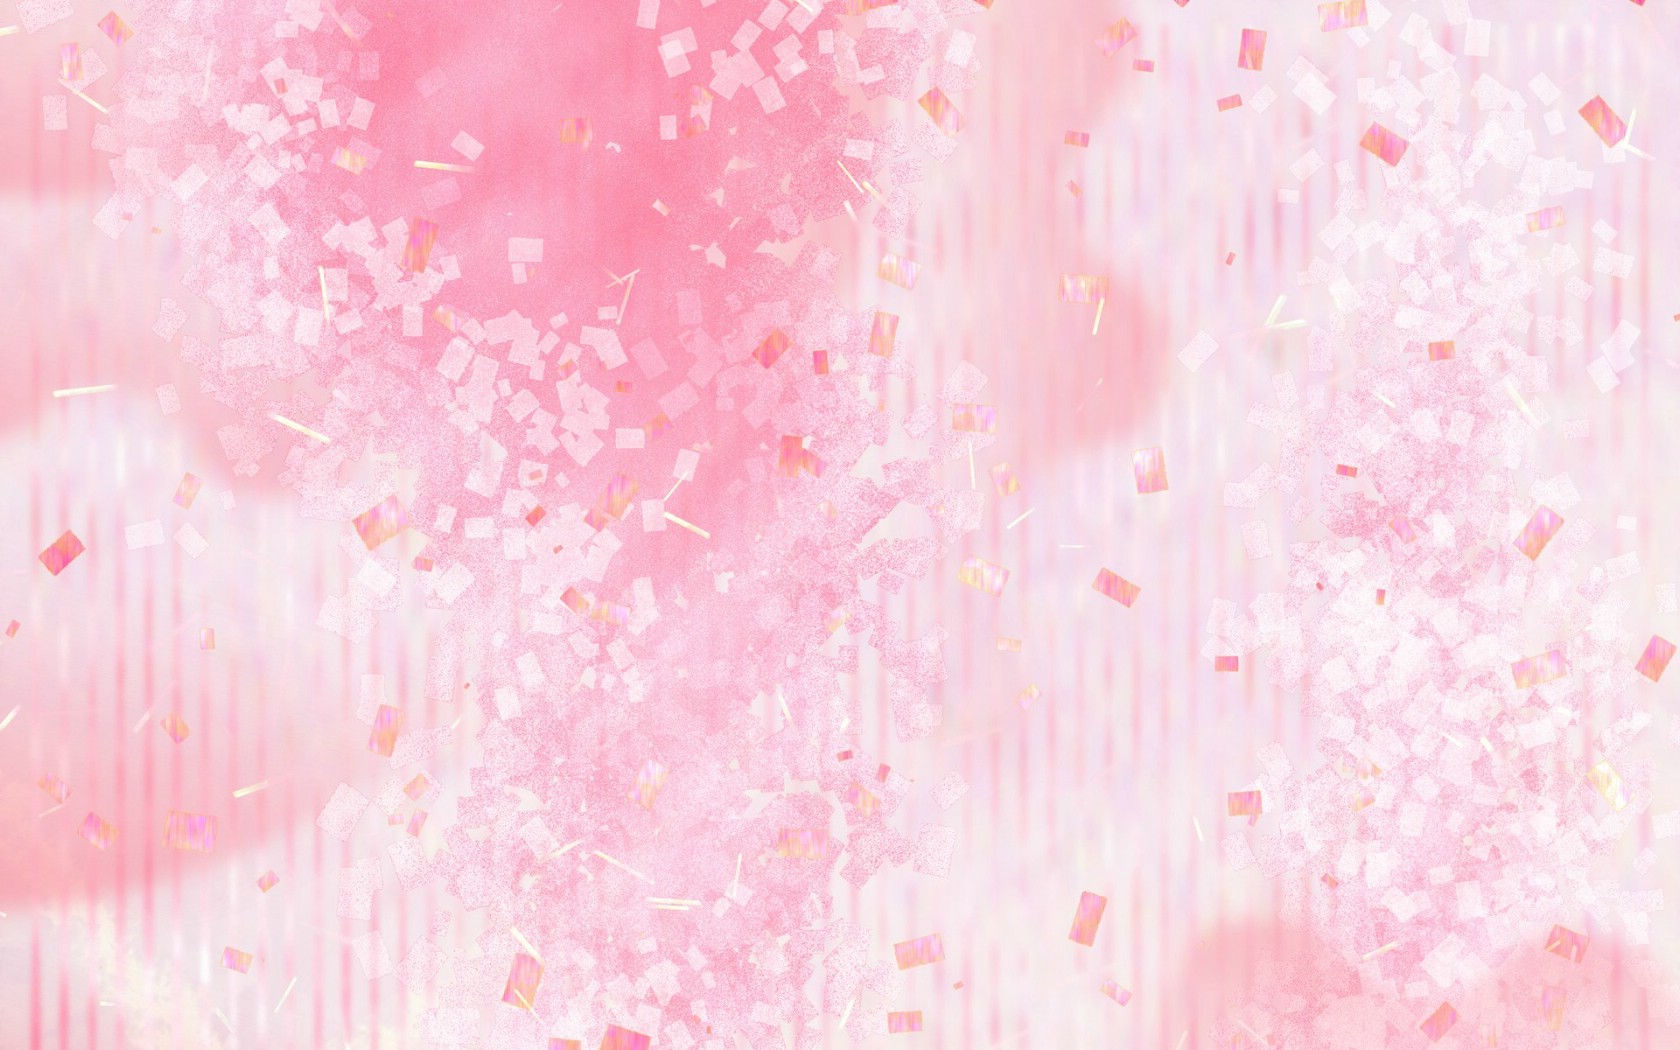 壁纸1680x1050 甜美系 碎花花卉图案设计壁纸 美丽碎花布 之 粉红甜美系壁纸 美丽碎花布 之 粉红甜美系图片 美丽碎花布 之 粉红甜美系素材 花卉壁纸 花卉图库 花卉图片素材桌面壁纸